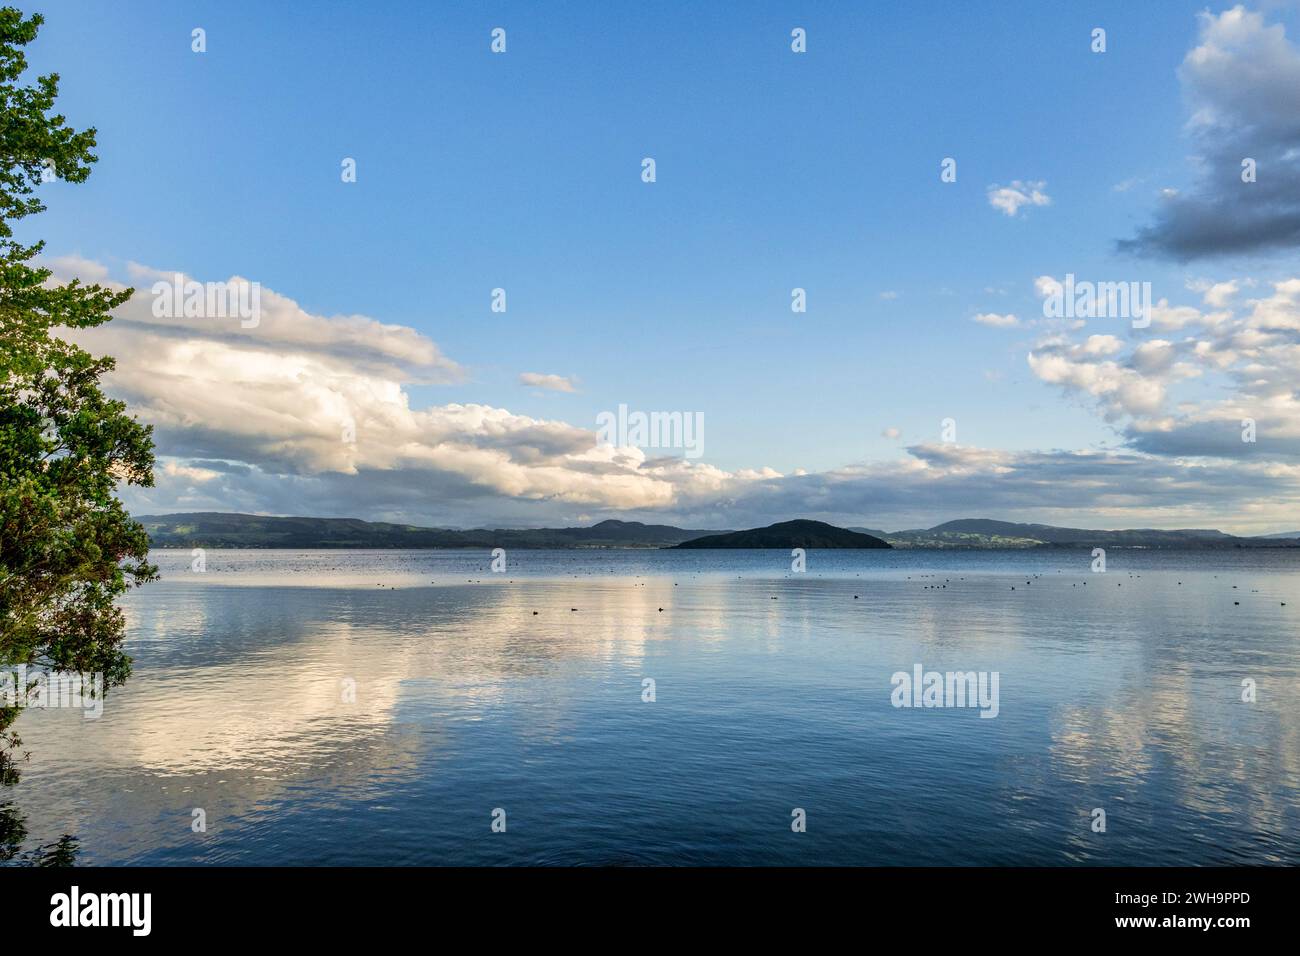 Looking south towards Mokoia Island from the north shore of Lake Rotorua, Bay of Plenty, New Zealand. Stock Photo